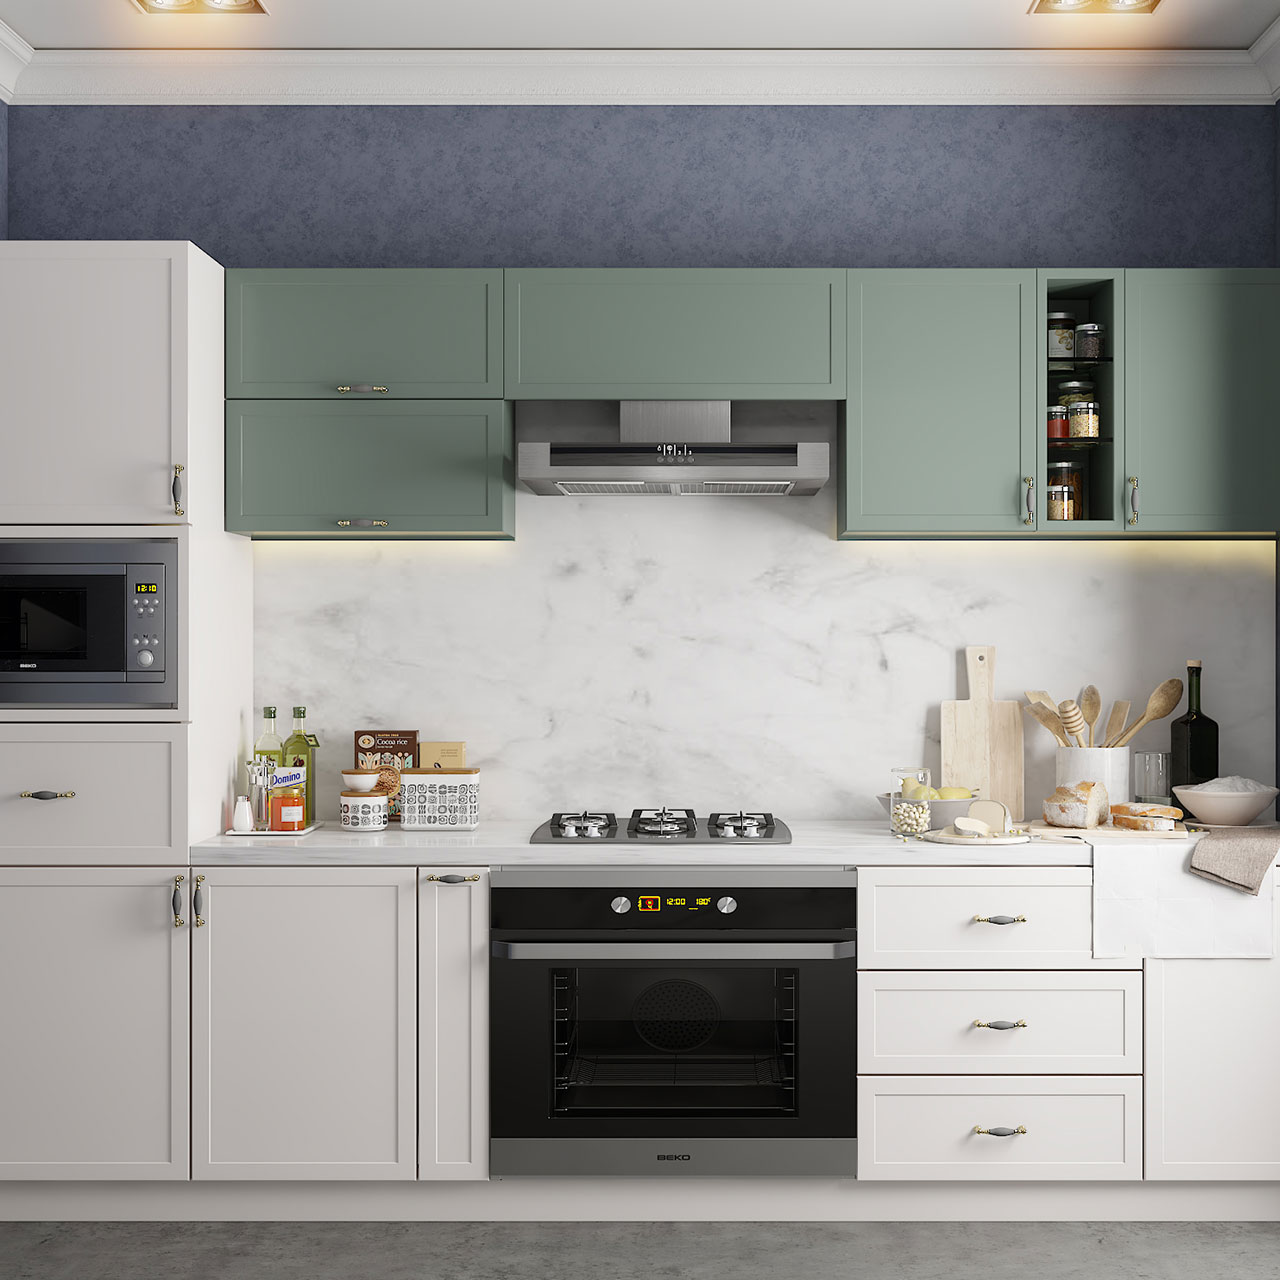 Modern modular kitchen design is a very popular kitchen design type